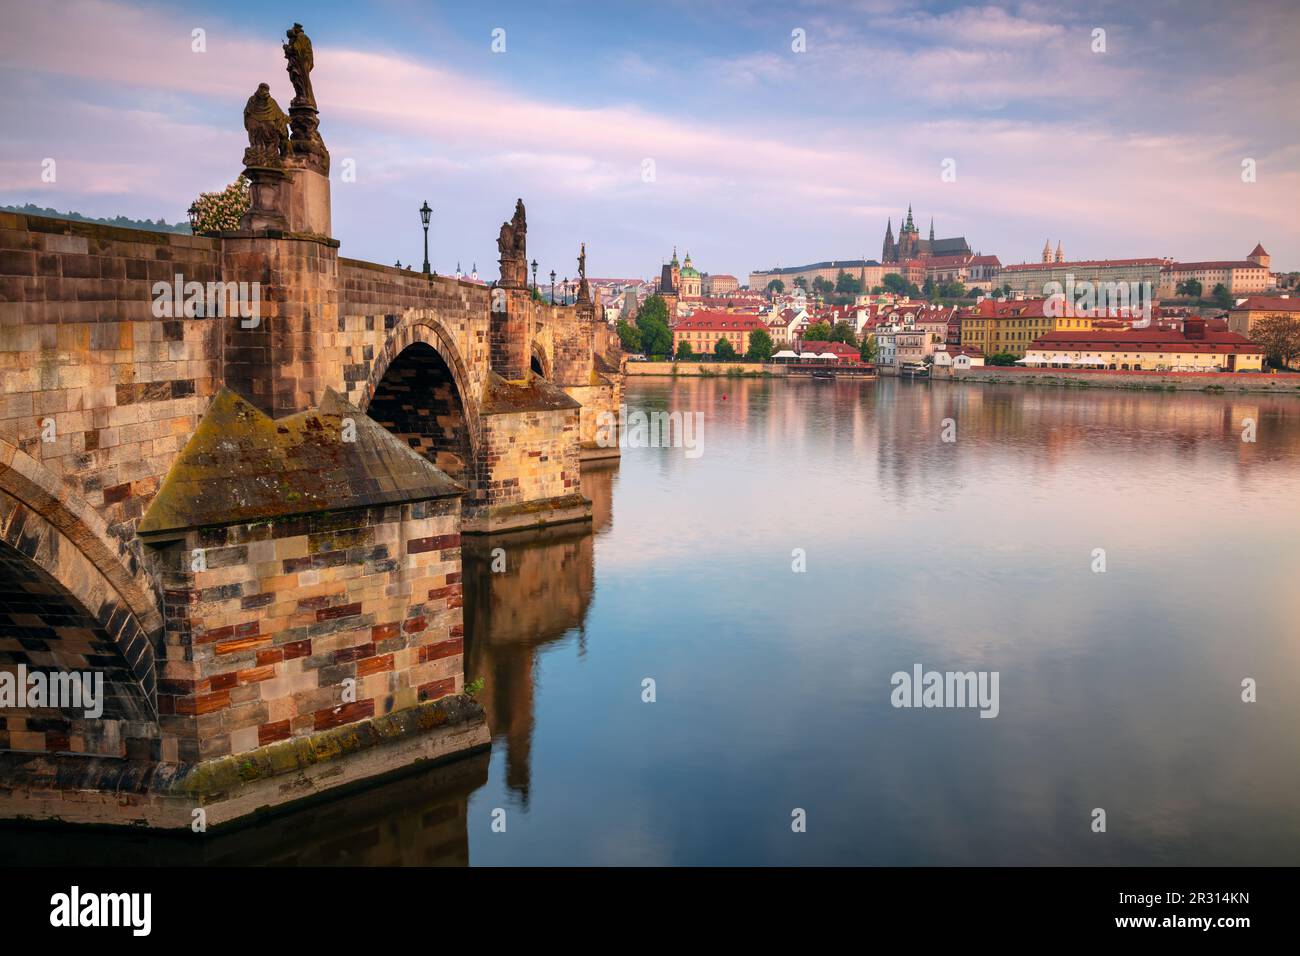 Praga, Repubblica Ceca. Immagine della città di Praga, capitale della Repubblica Ceca, con l'iconico Ponte Carlo all'alba. Foto Stock